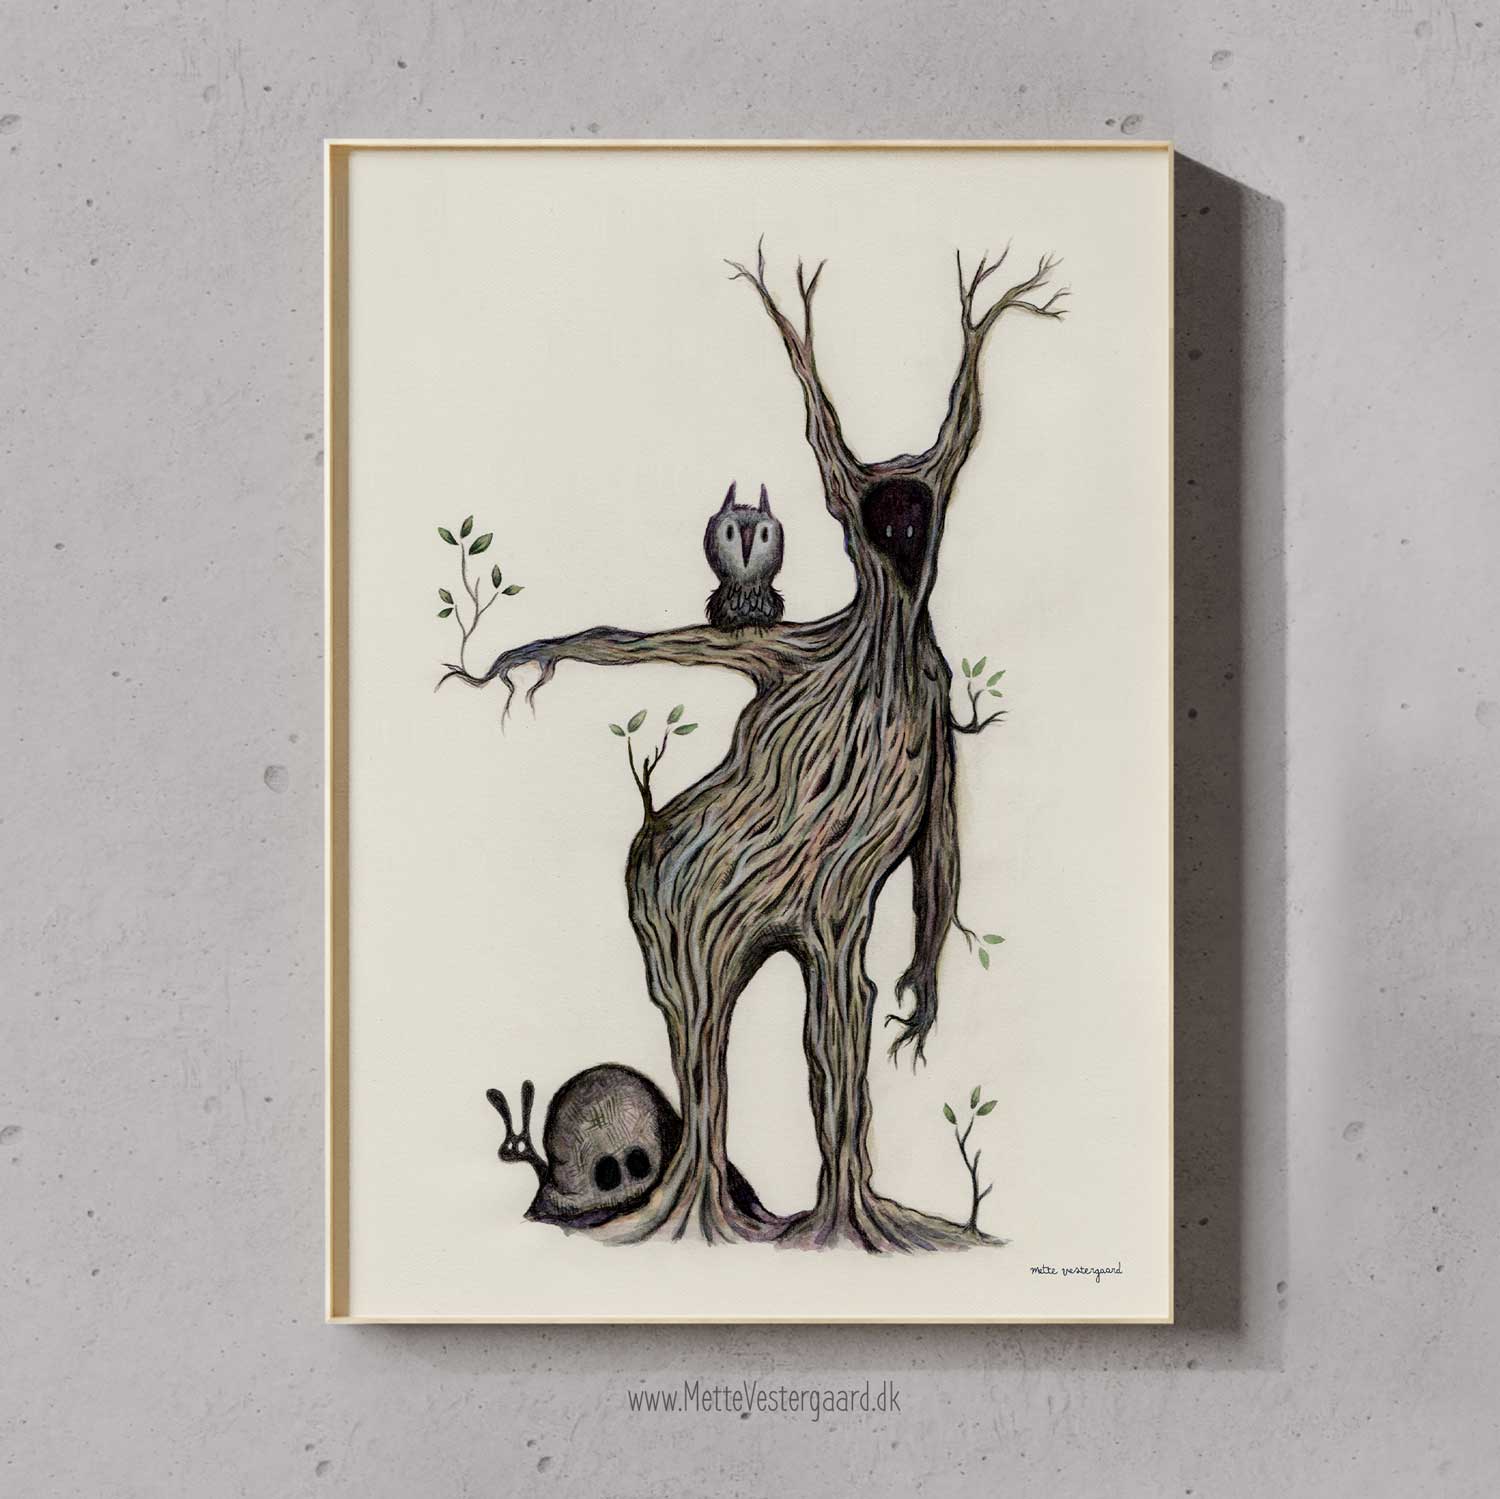 Illustration af træmanden Mr. Quirky. På hans arm sidder der en hornugle.